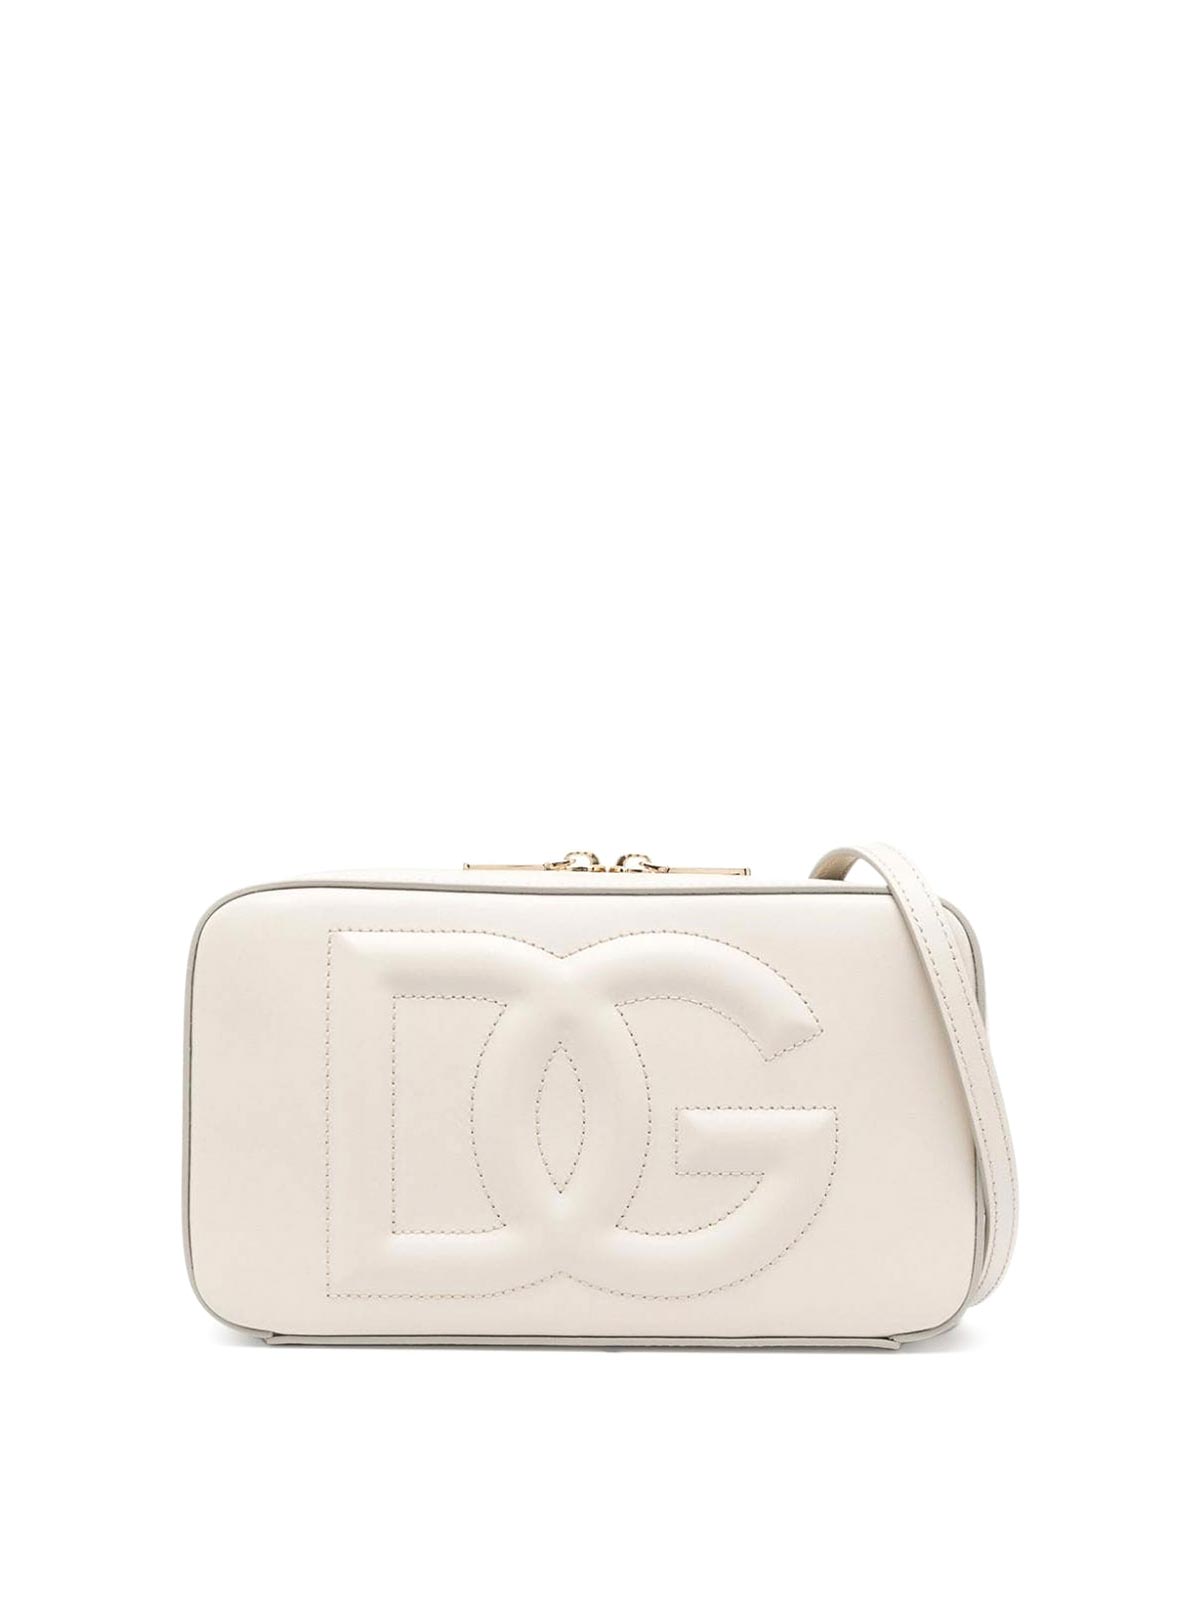 Dolce & Gabbana Shoulder Bag In Neutral